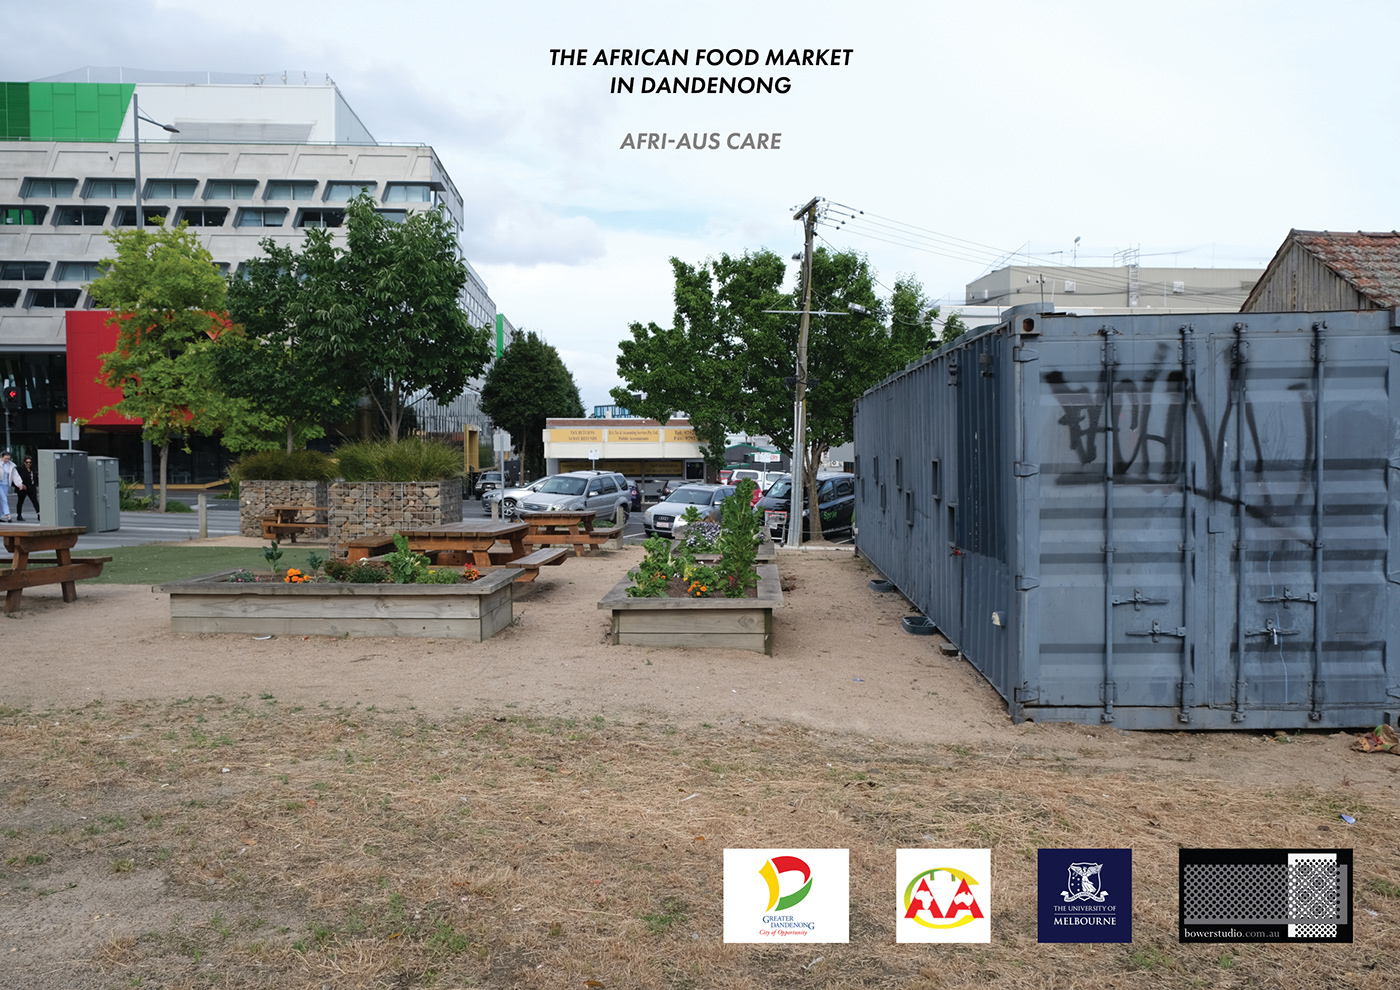 kitchen garden pavilion african community engagement culture refugee Bower Studio aboriginal